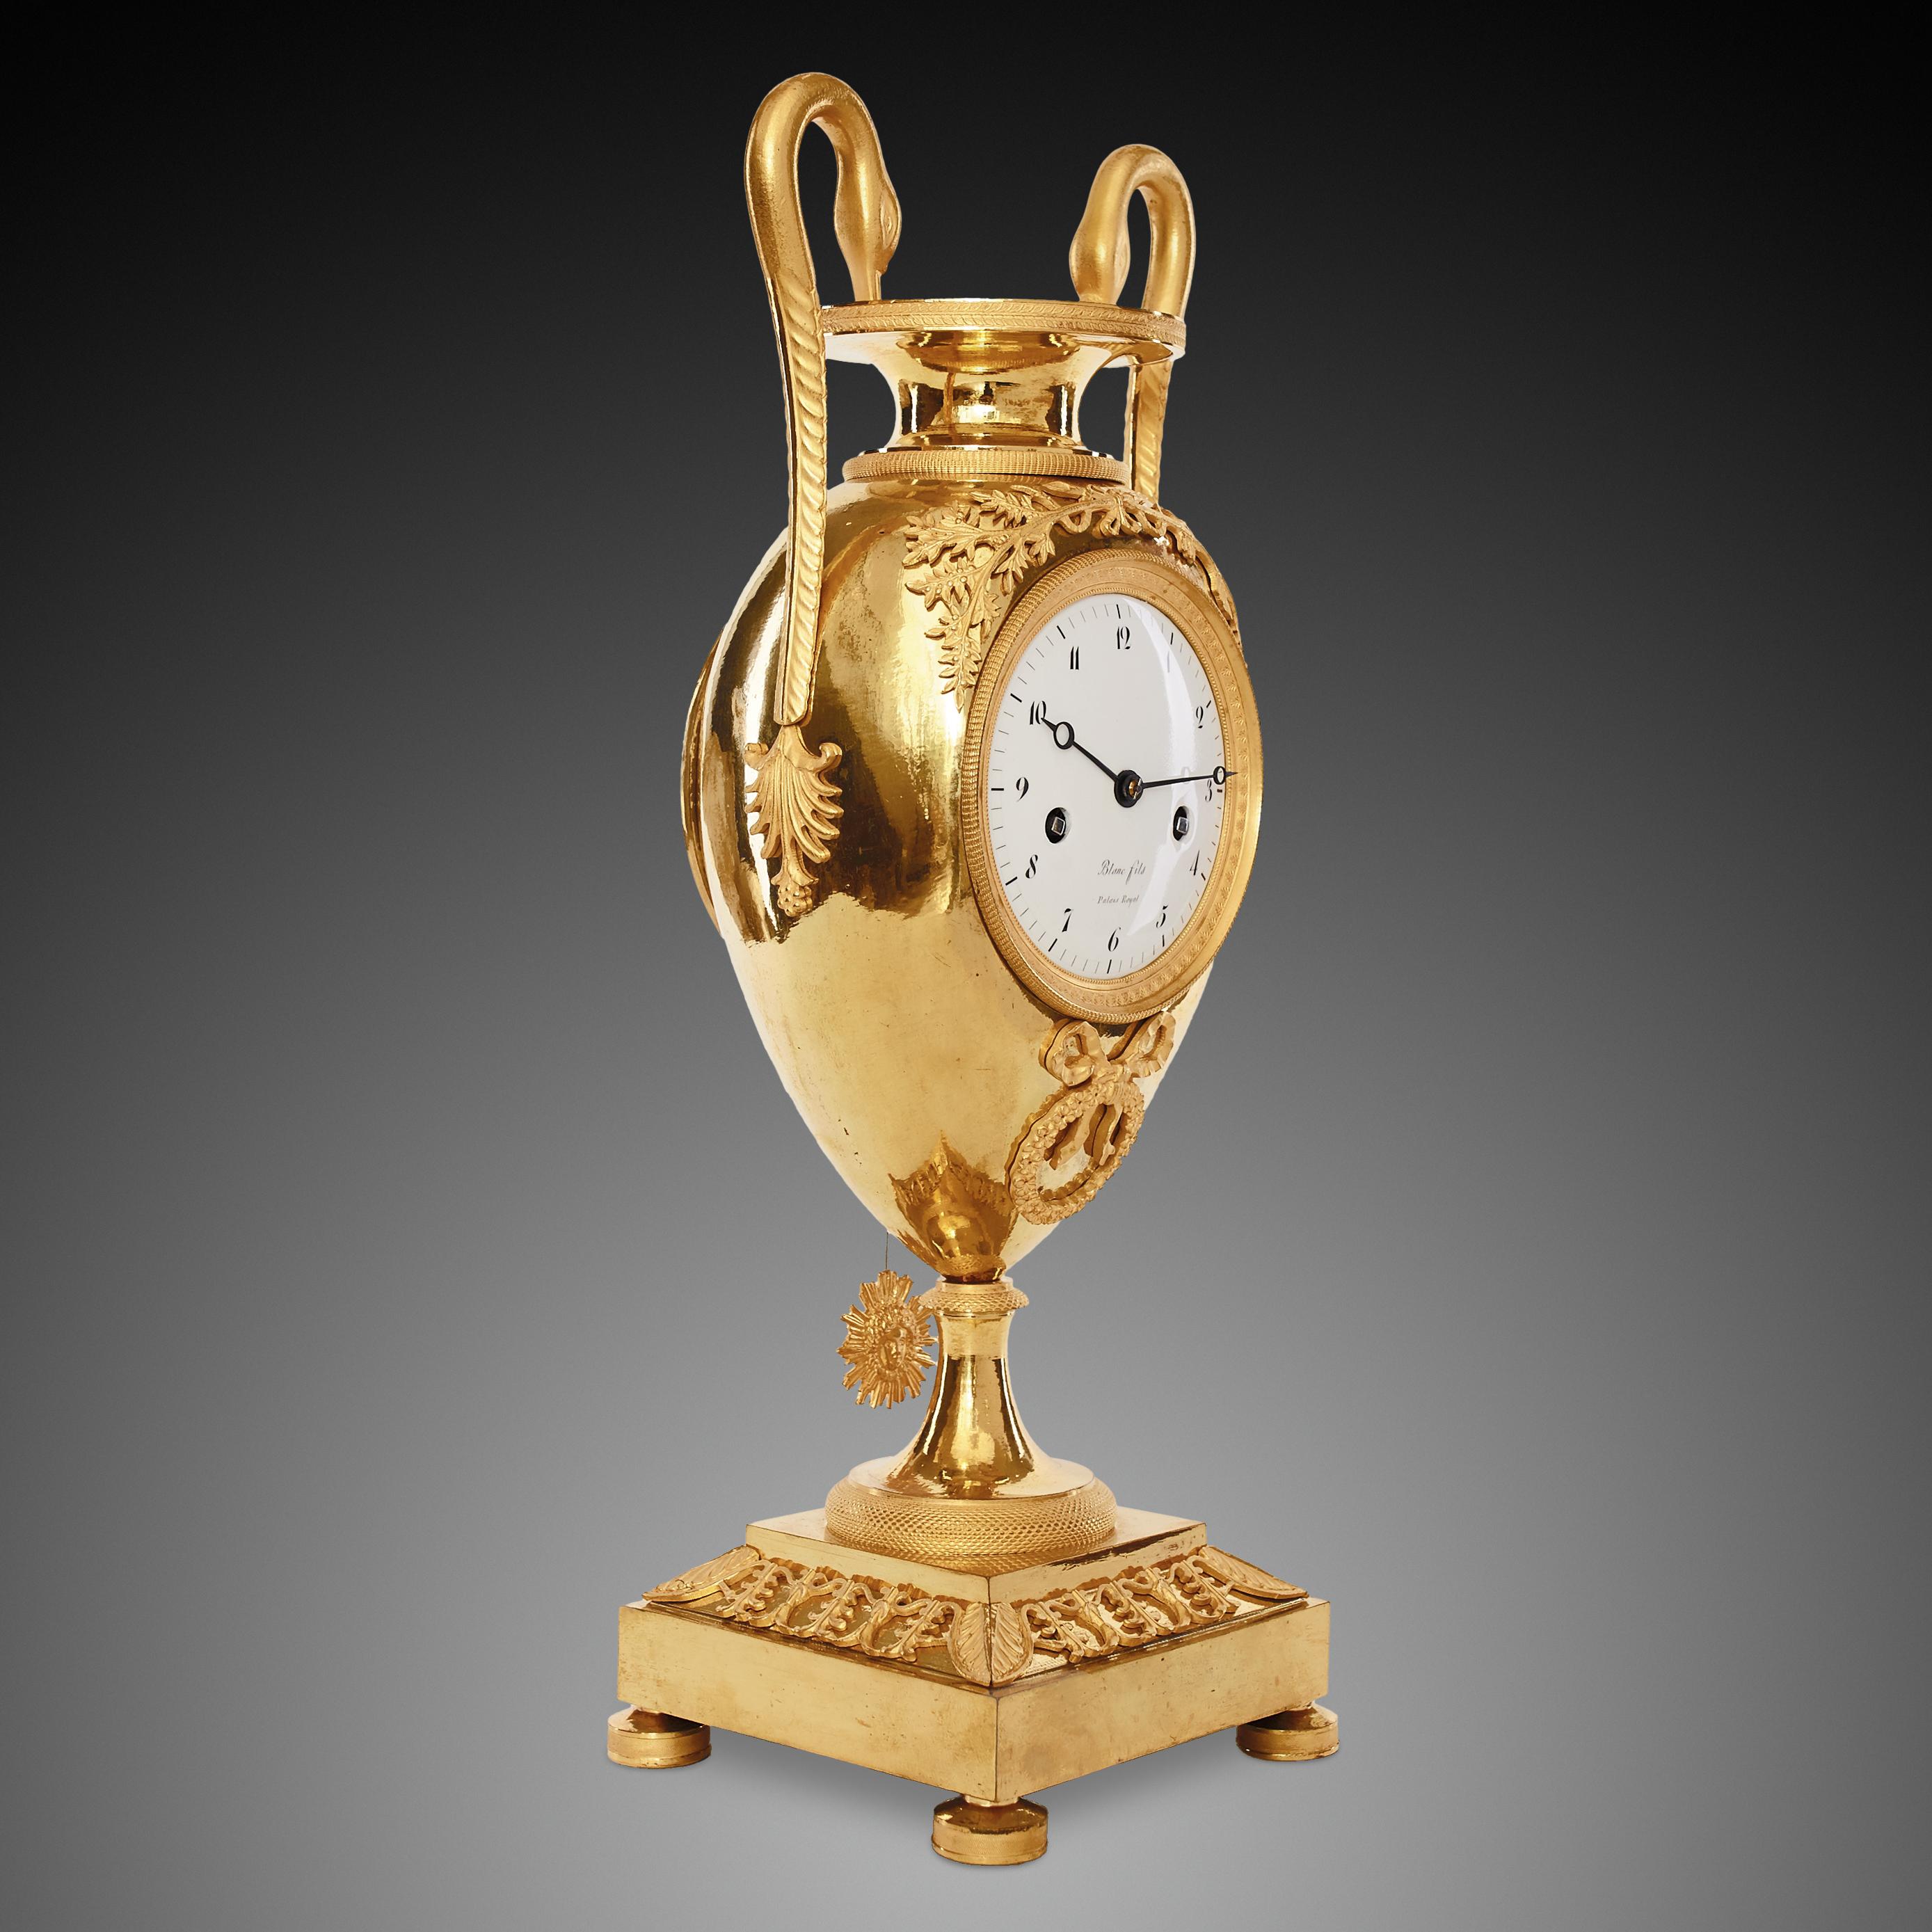 Cette horloge vase finement ciselée, coulée en bronze avec des éléments dorés, est originaire de la première moitié du XIXe siècle. Le style Empire était basé sur des éléments de l'Empire romain et de sa culture, redécouverts à partir du XVIIIe